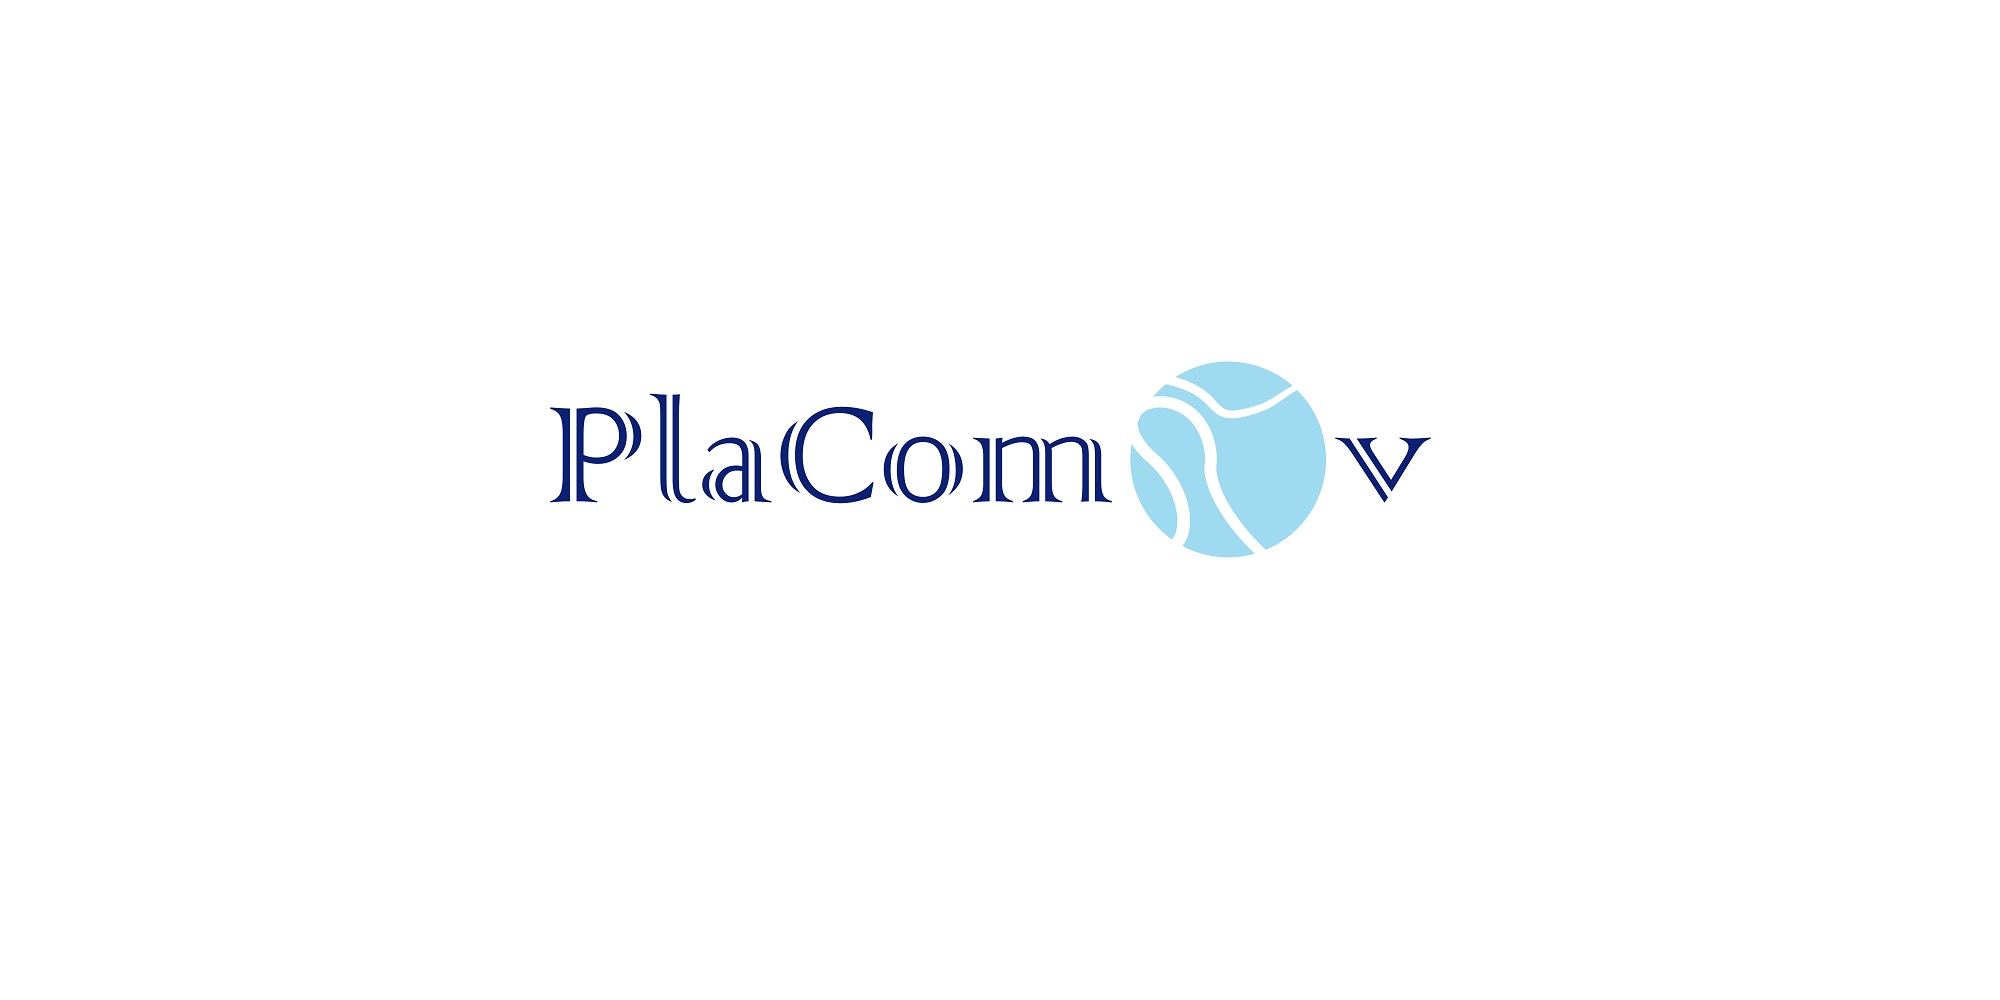 Logo Placom OV study